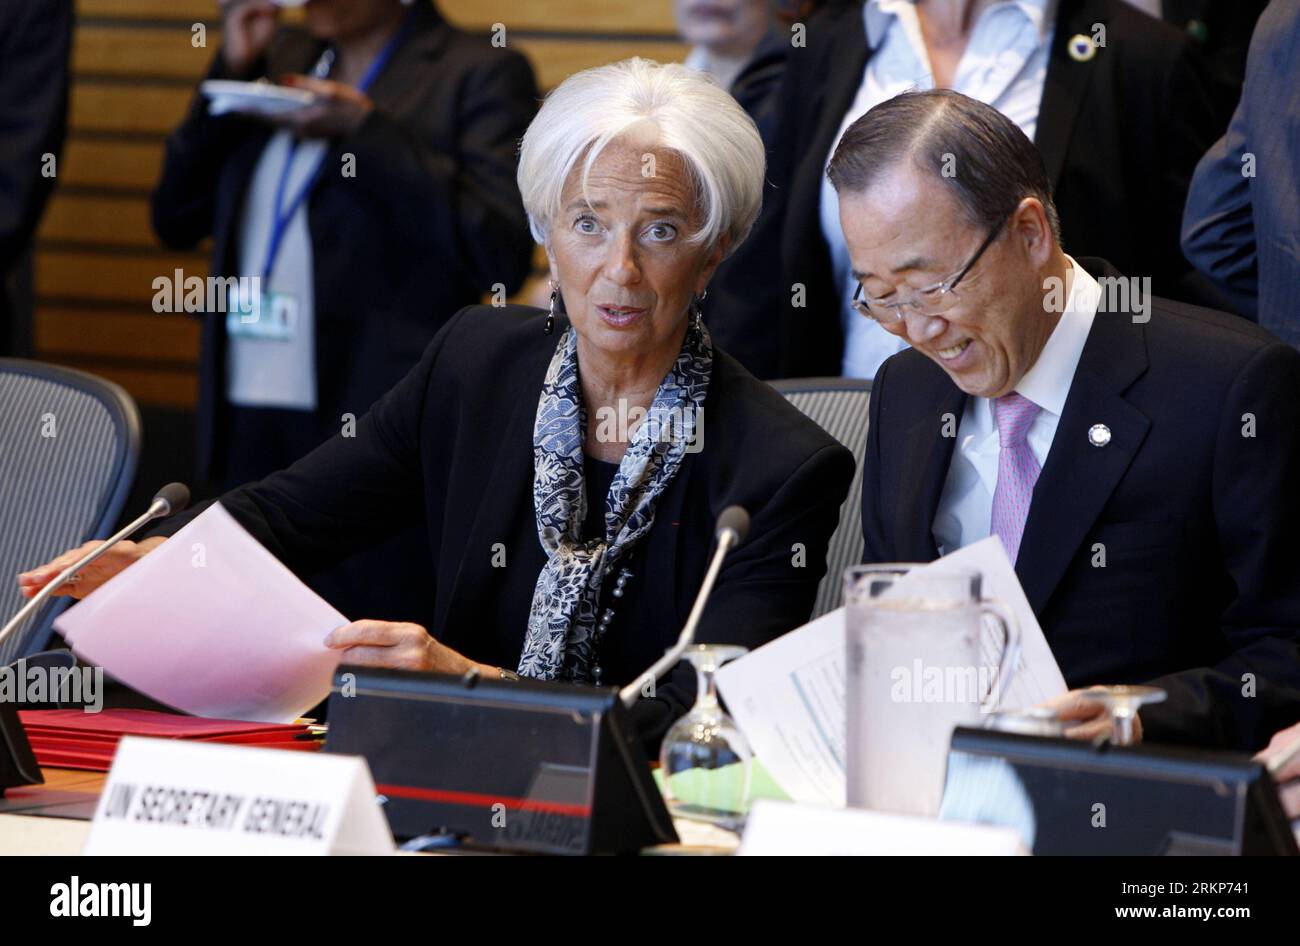 (120420) -- WASHINGTON D.C., 20 avril 2012 (Xinhua) -- le Secrétaire général des Nations Unies Ban Ki-moon (à droite) et la Directrice générale du Fonds monétaire international (FMI) Christine Lagarde assistent au dialogue ministériel sur le développement durable, la voie vers Rio+20 à Washington D.C., capitale des États-Unis, le 20 avril 2012, lors des réunions de printemps du FMI et de la Banque mondiale. (Xinhua/Fang Zhe) (zjl) États-Unis-WASHINGTON D.C. DIALOGUE ministériel-DÉVELOPPEMENT DURABLE PUBLICATIONxNOTxINxCHN 120420 Washington D C avril 20 2012 XINHUA Secrétaire général des Nations Unies Ban KI Moon r et Directeur général de l'Internationa Banque D'Images